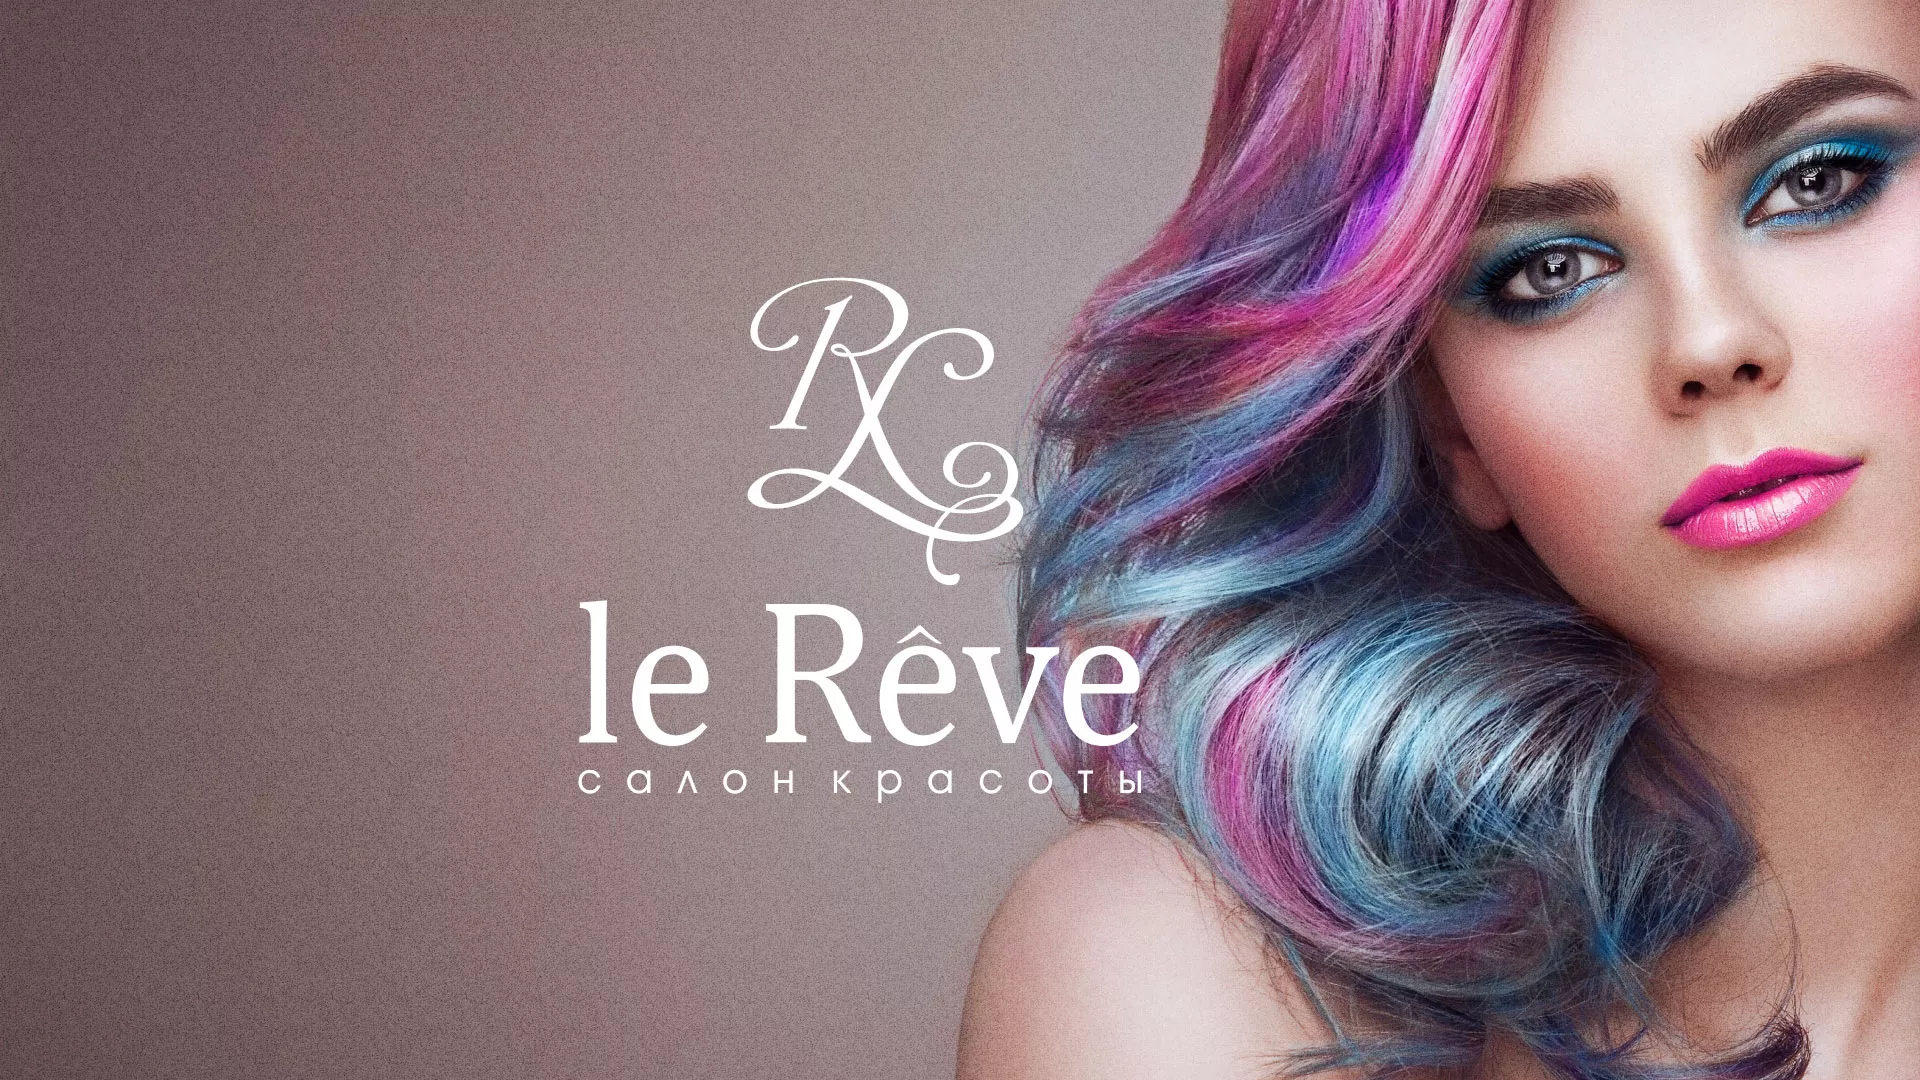 Создание сайта для салона красоты «Le Reve» в Пудоже